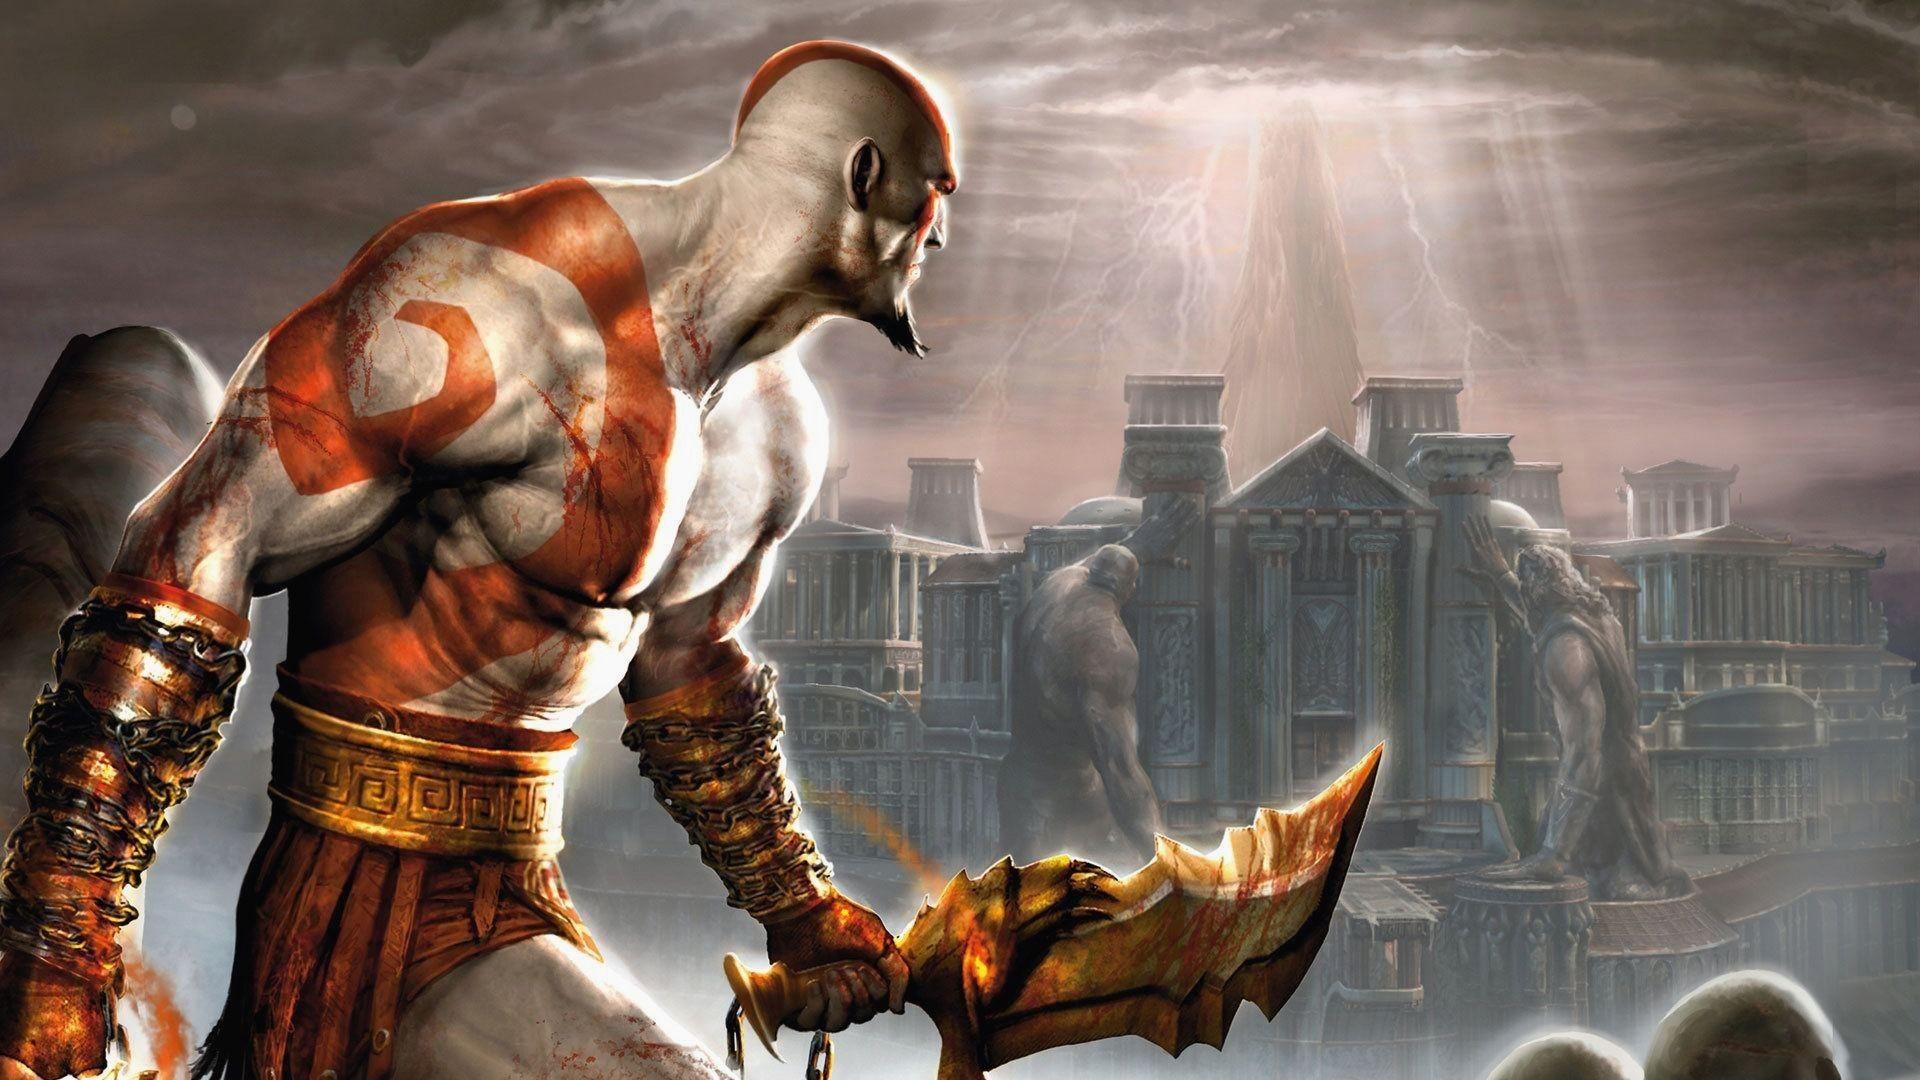 Amazing Games Wallpaper Inspirational Kratos God Of War Kratos God